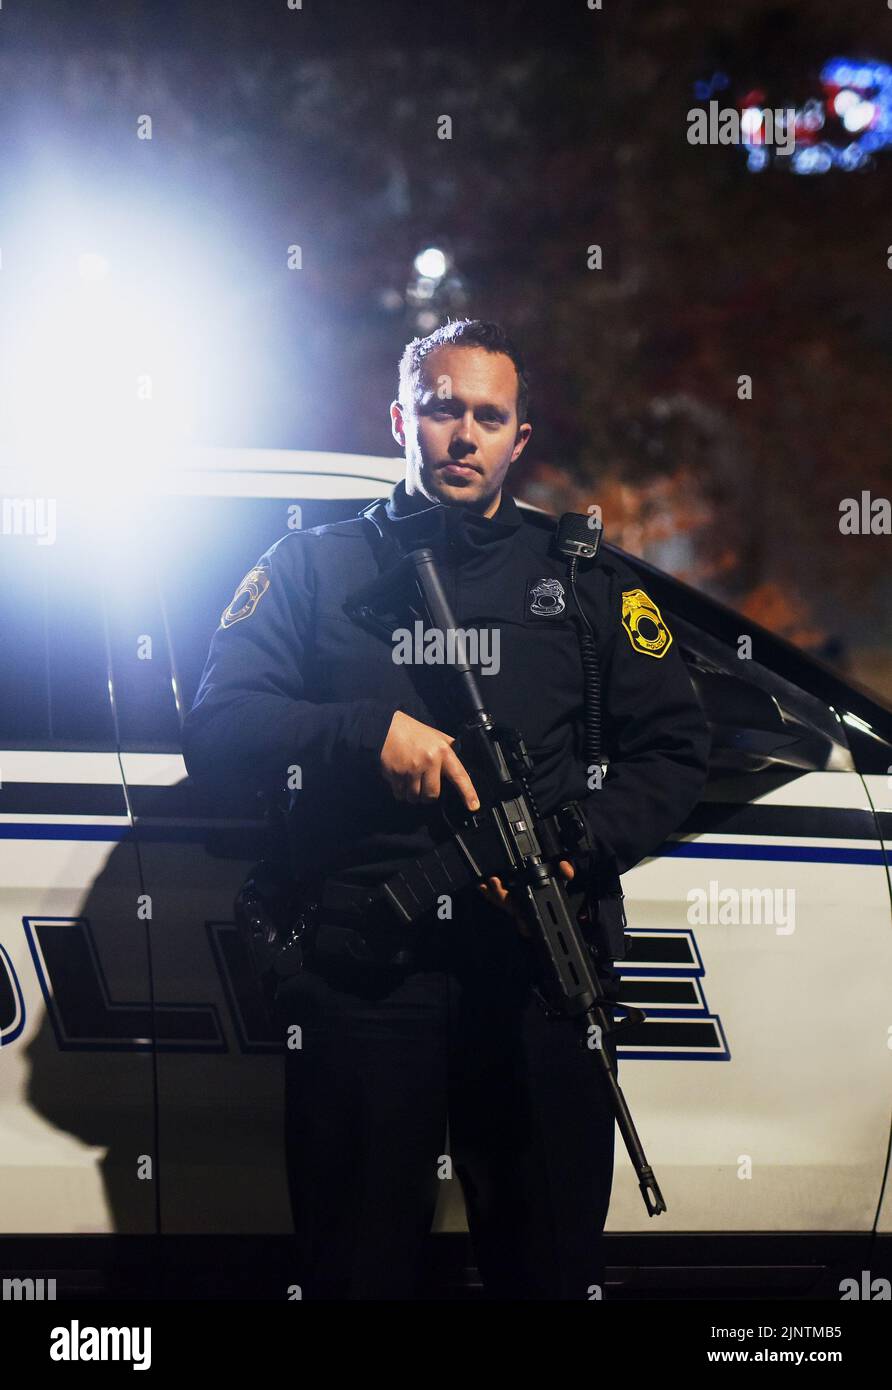 Servir et protéger, quel que soit le coût. Portrait court d'un beau jeune policier debout avec son fusil d'assaut pendant sa patrouille. Banque D'Images